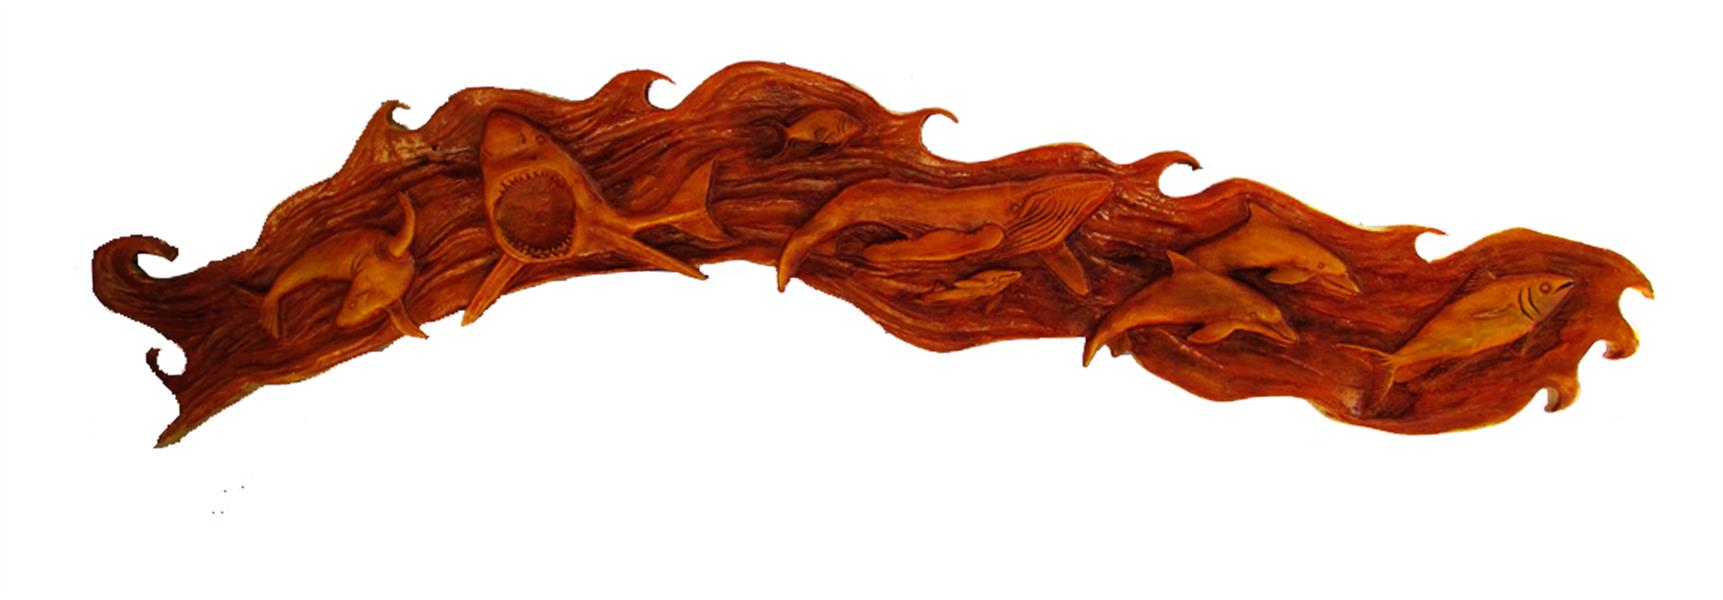 هنر سایر محفل سایر هنر ها faryotab اقیانوس 
متریال :چوب درخت چنار 
هنر دست 
سایز :1.20 *25